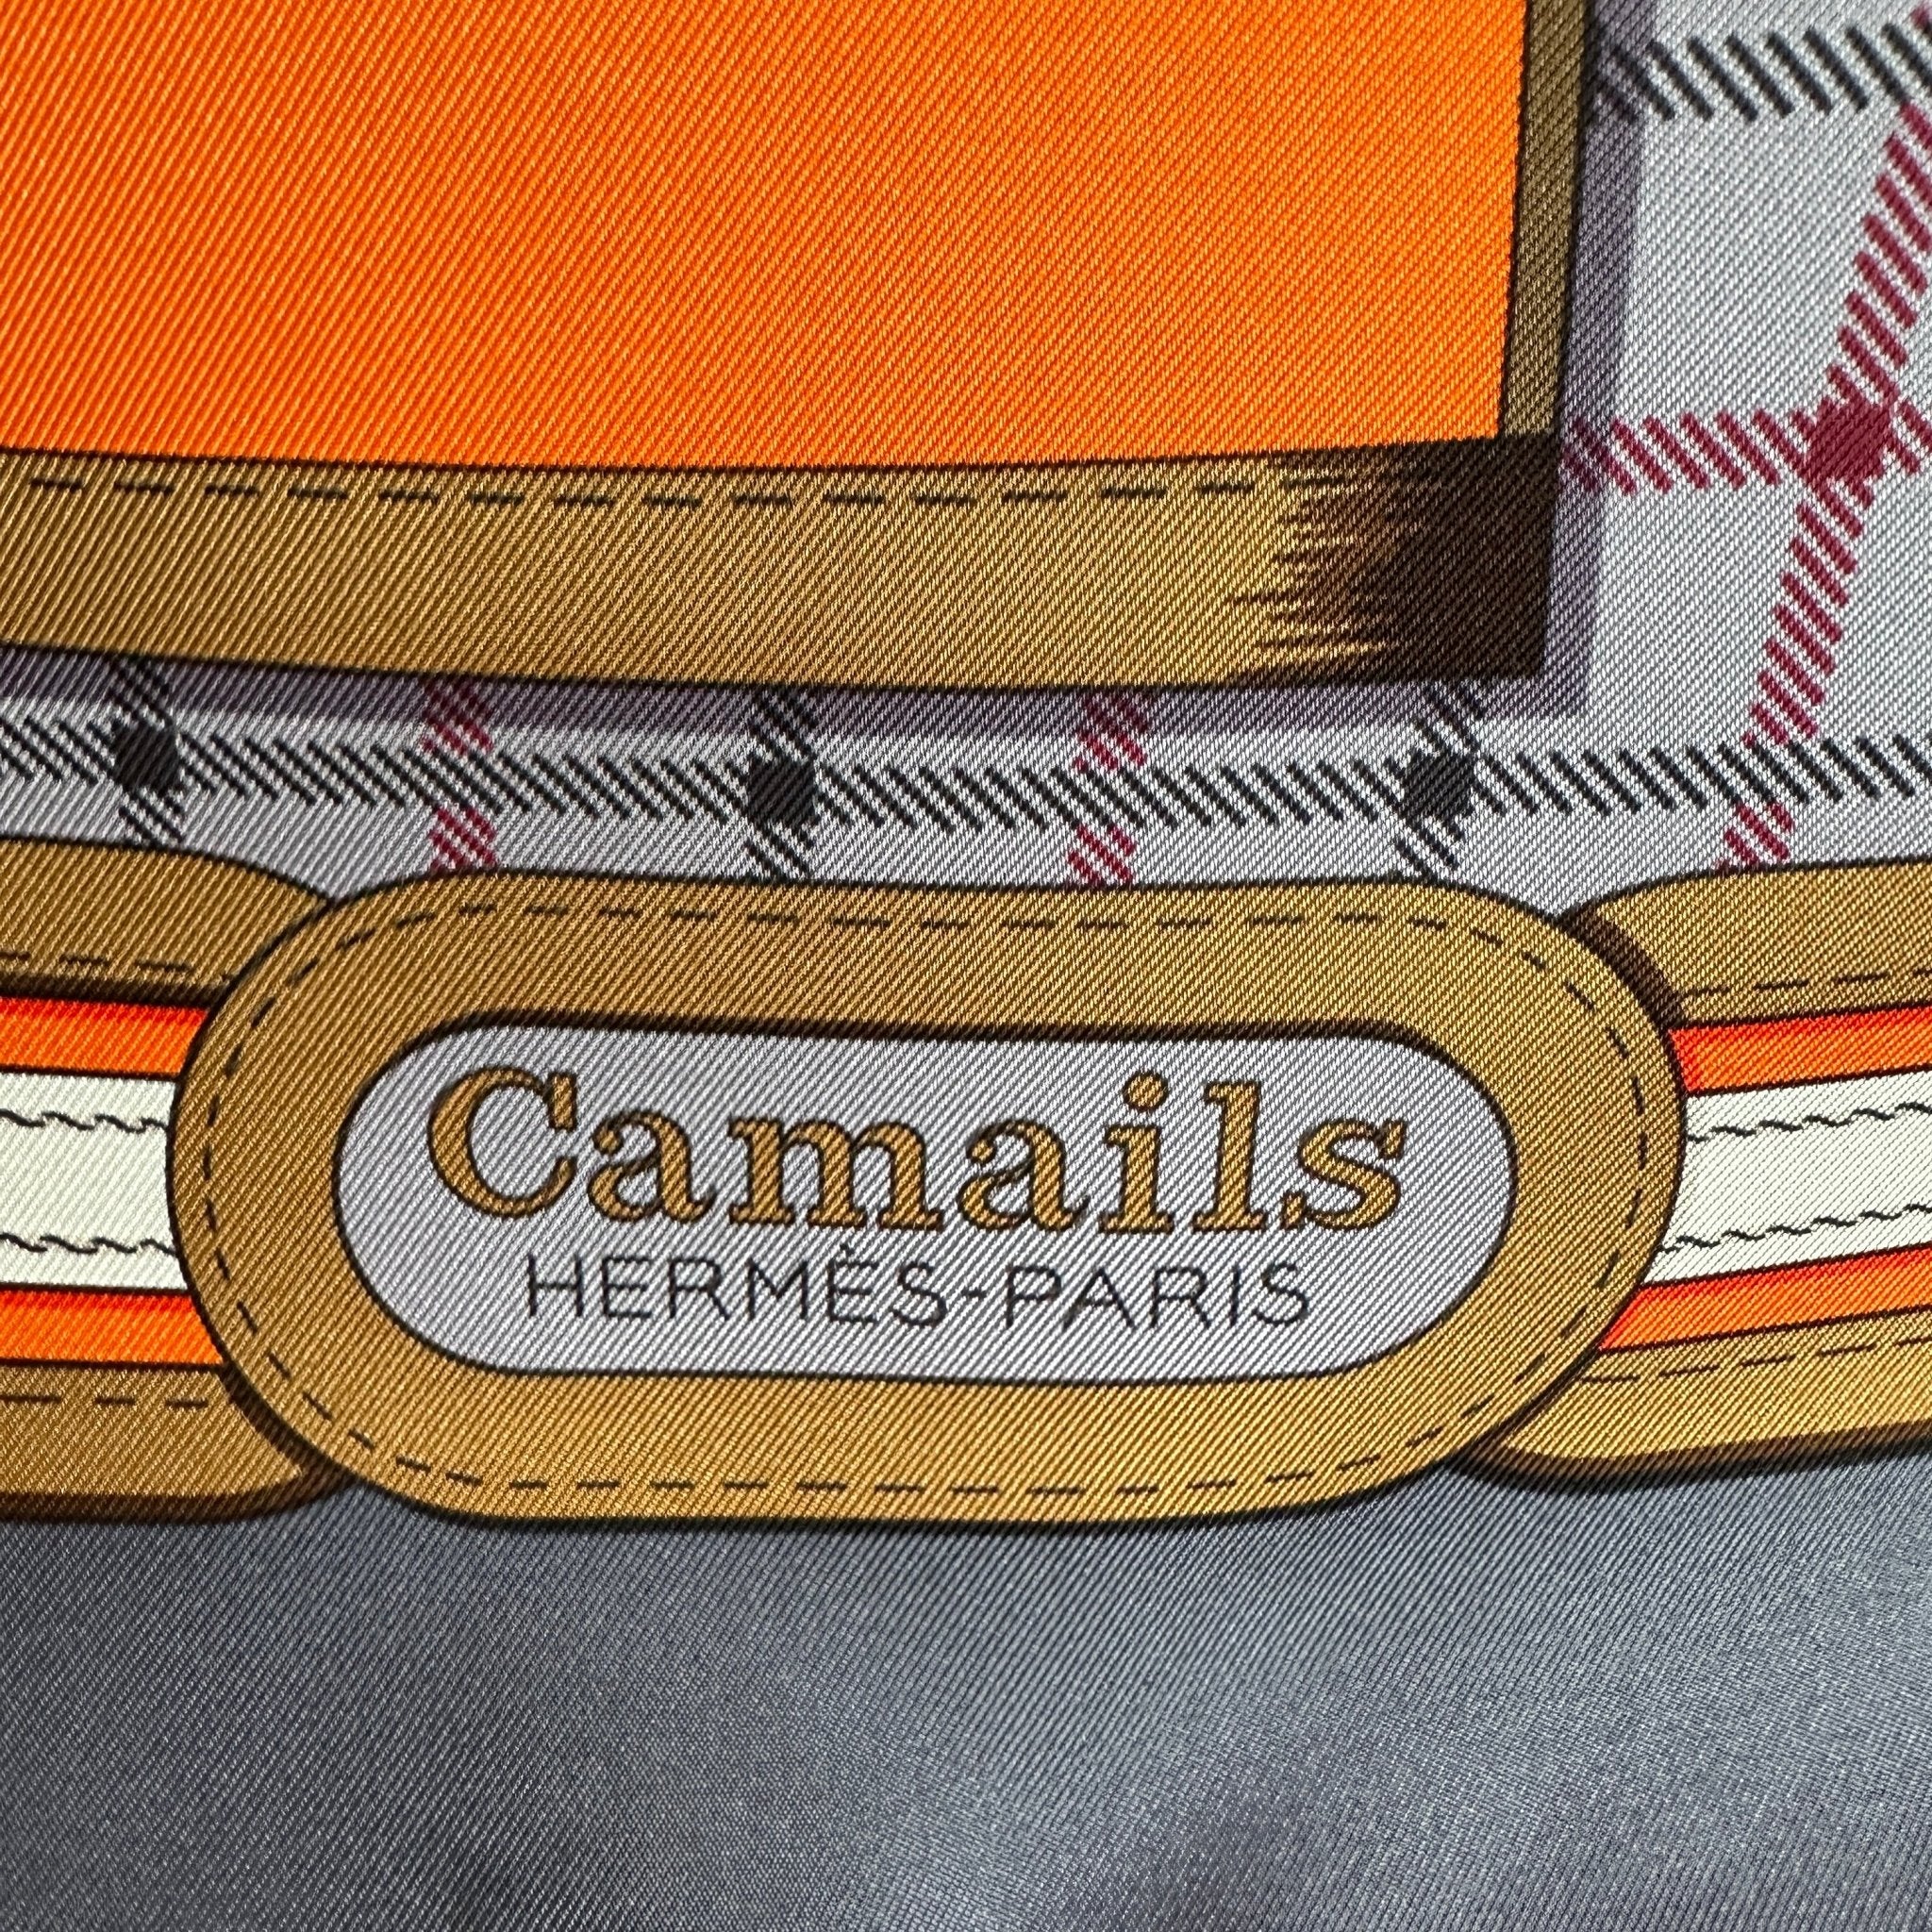 Camails - FOULARD HERMES 90CM - Carré Society